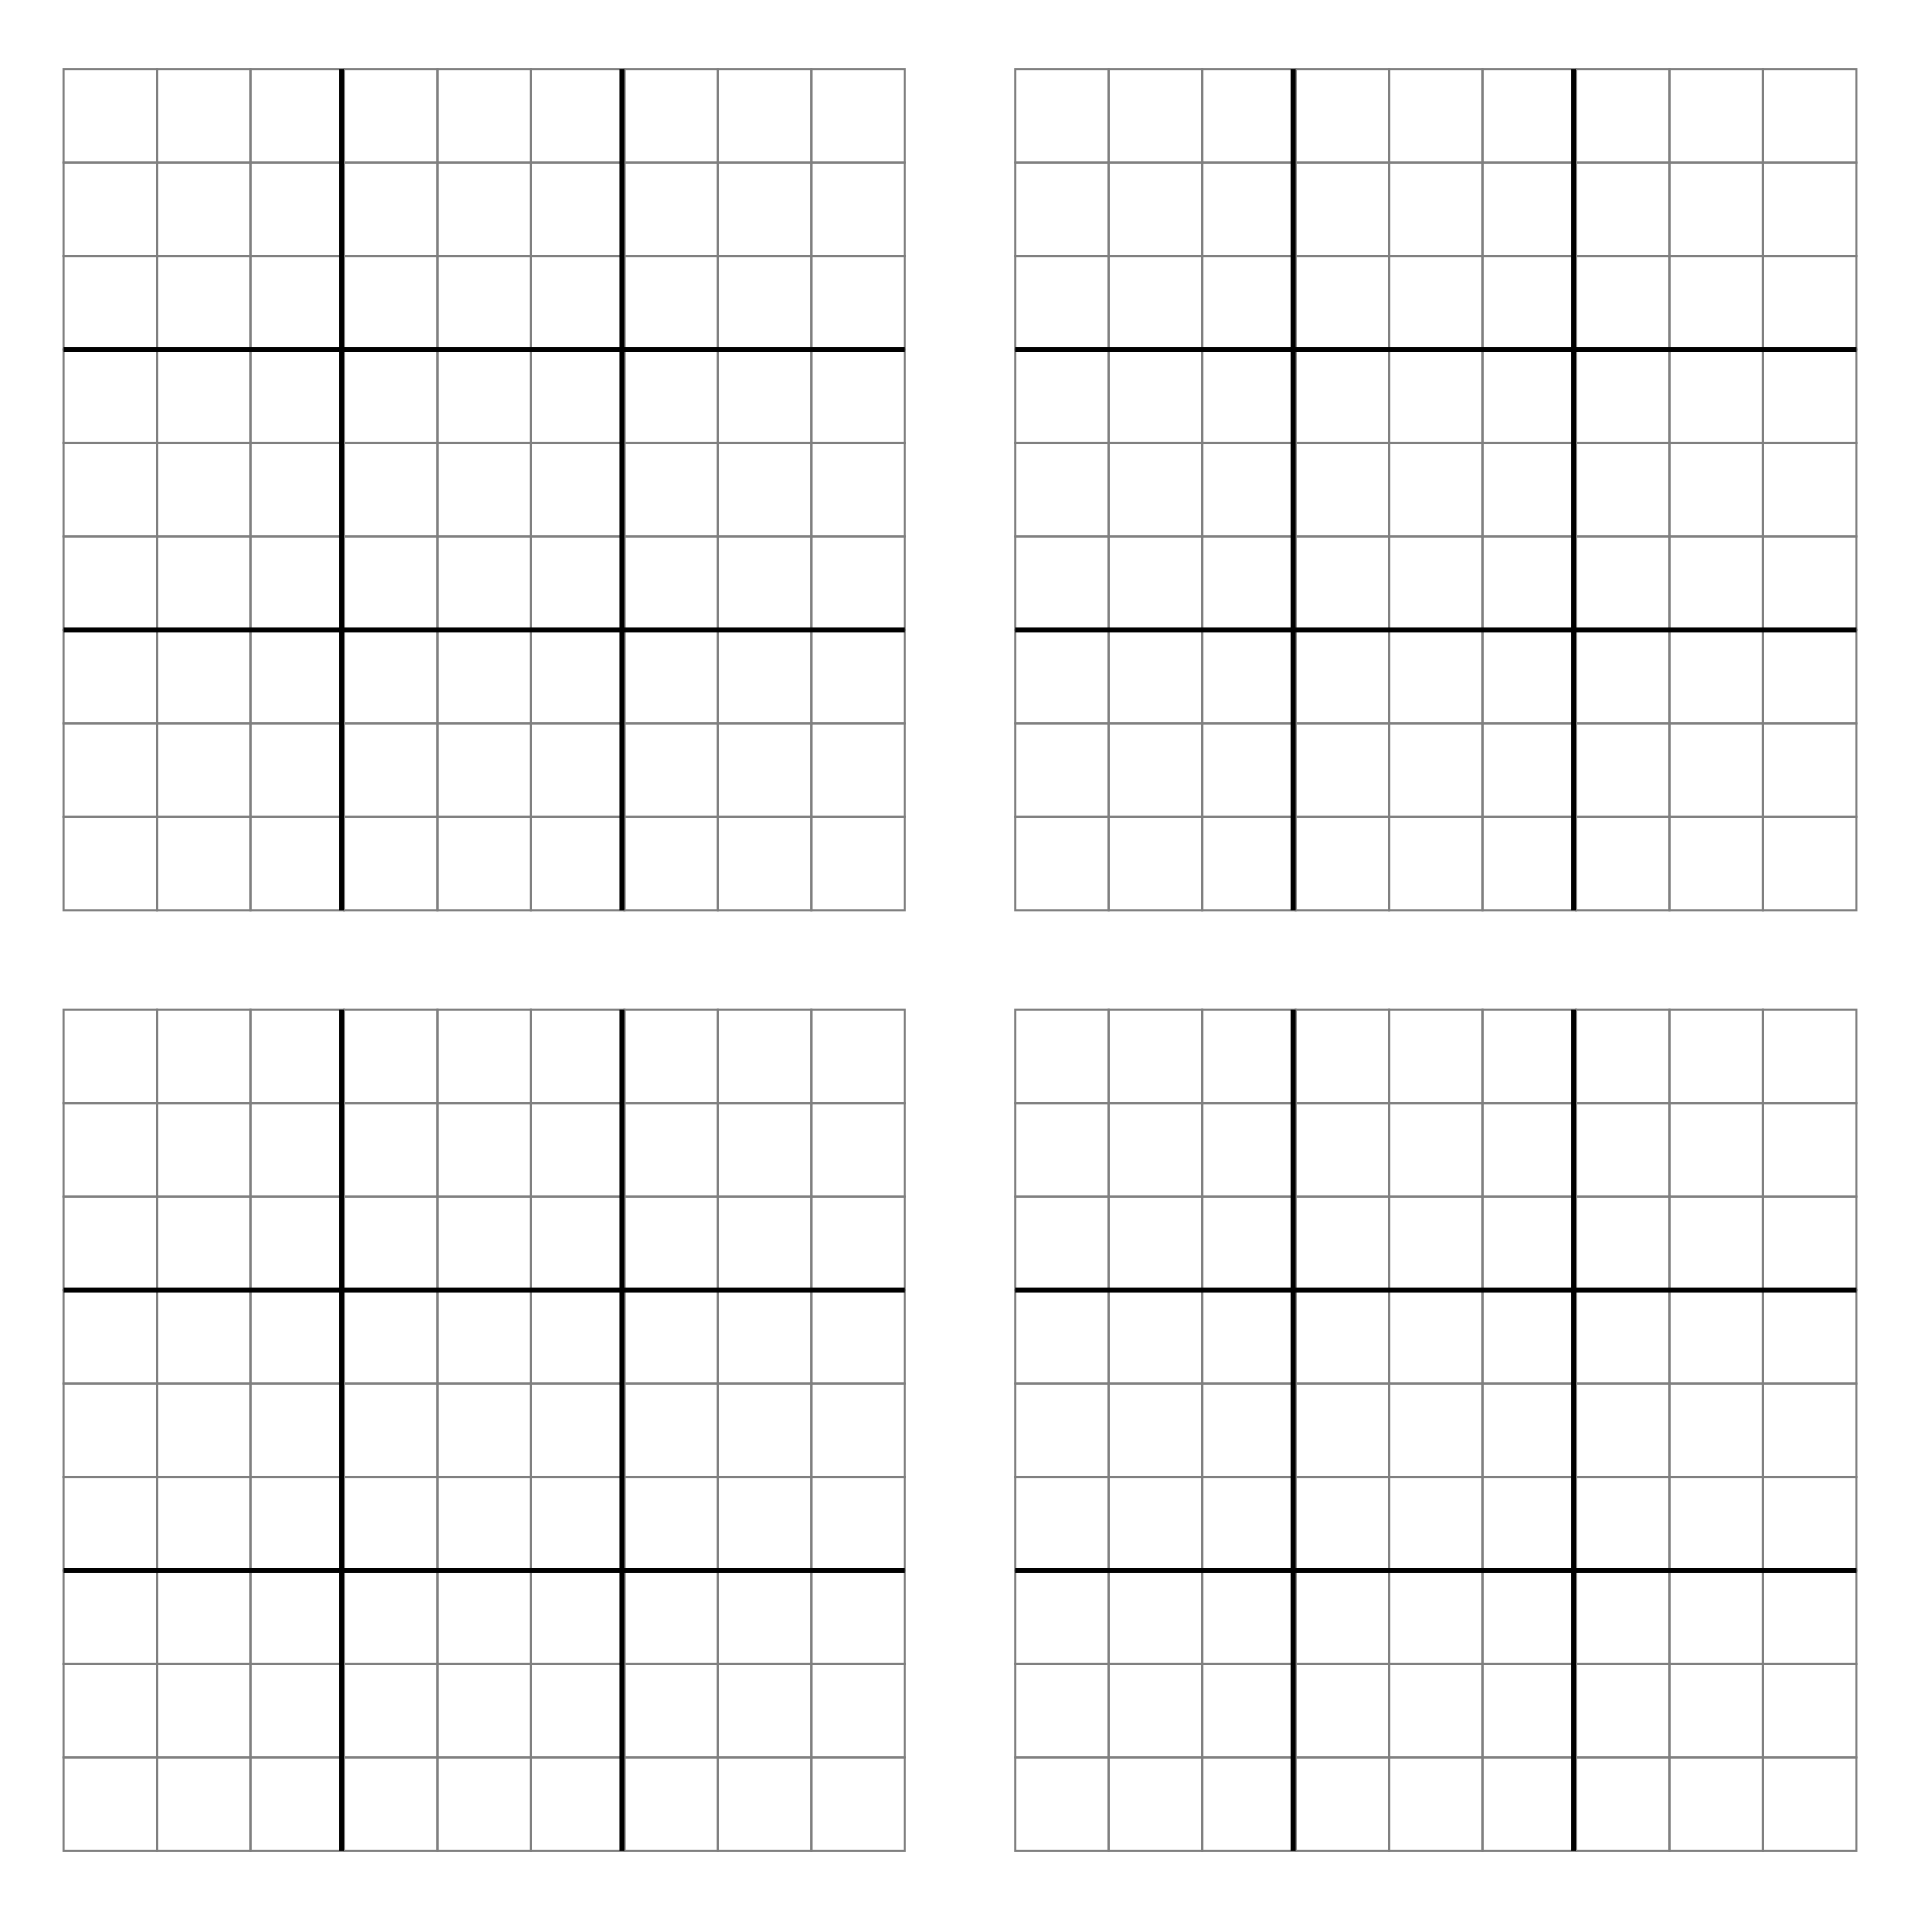 Blank Sudoku Grid Printable Printable World Holiday